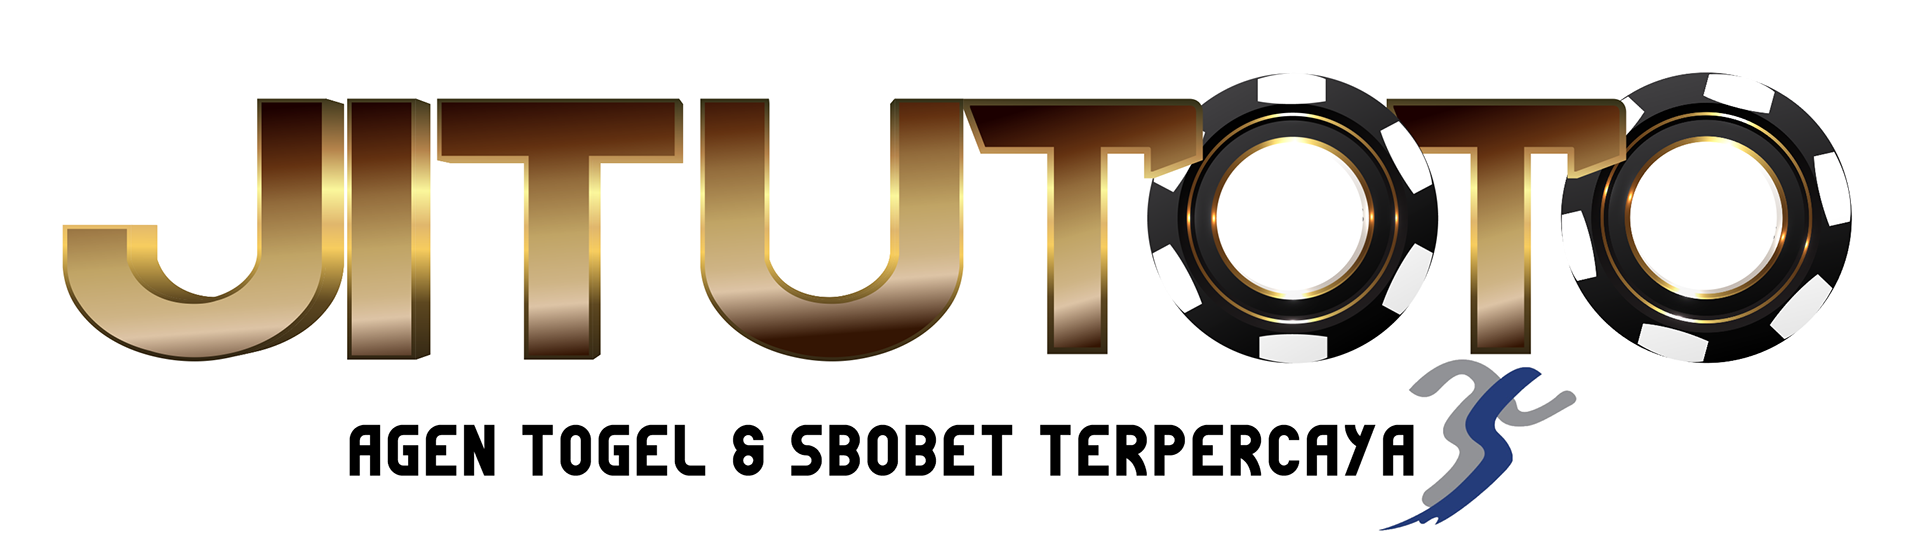 logo JITUTOTO Mobile